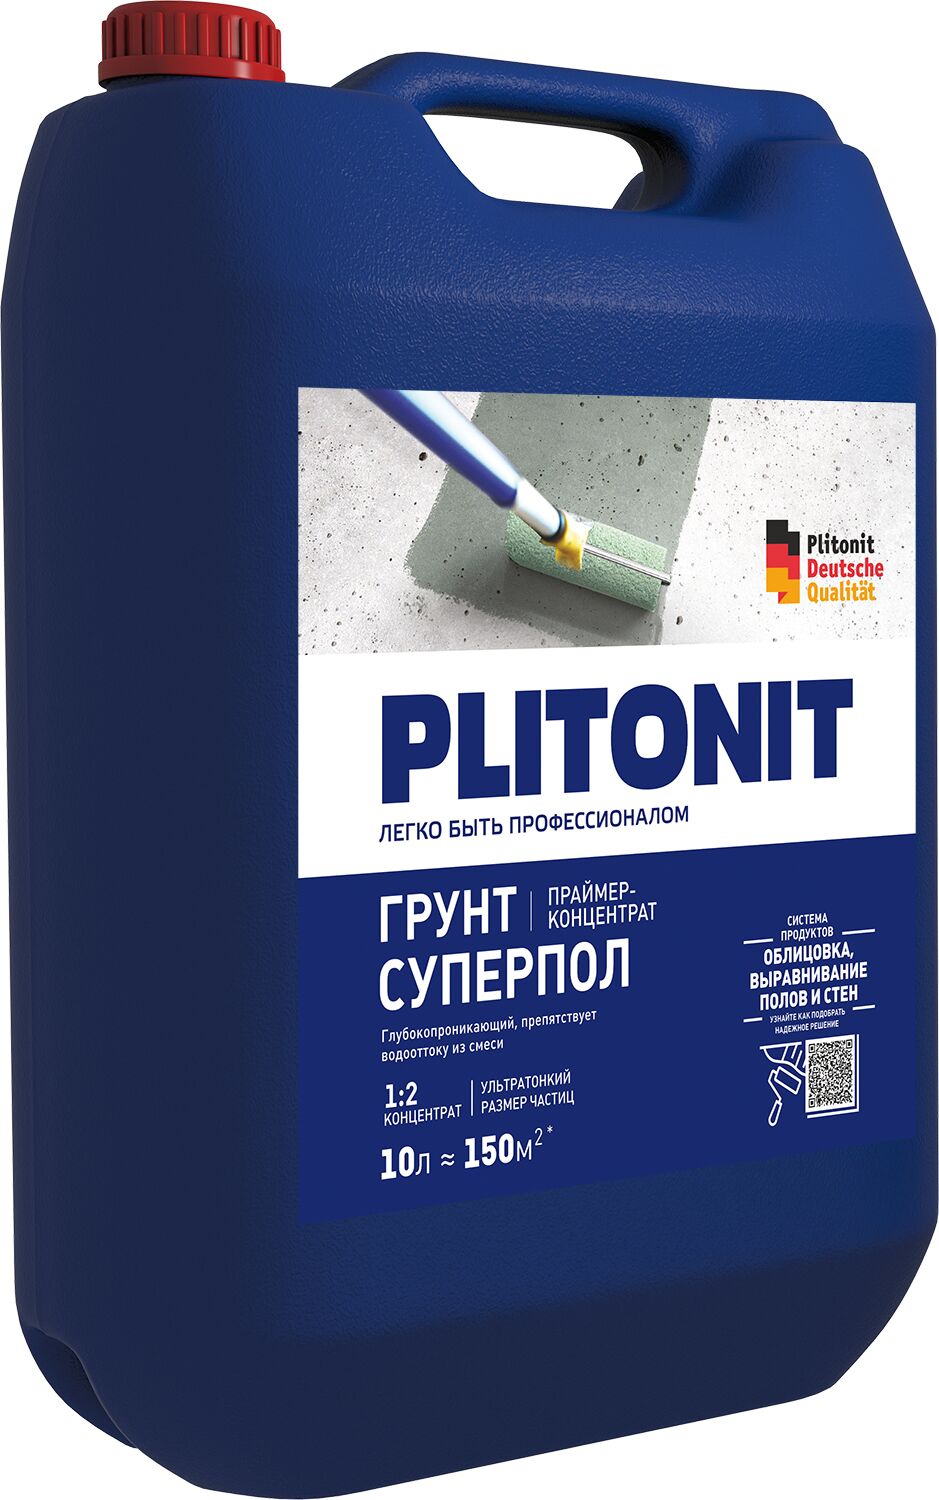 PLITONIT Грунт СуперПол -10 праймер-концентрат 1:2 акрилатный для напольных работ